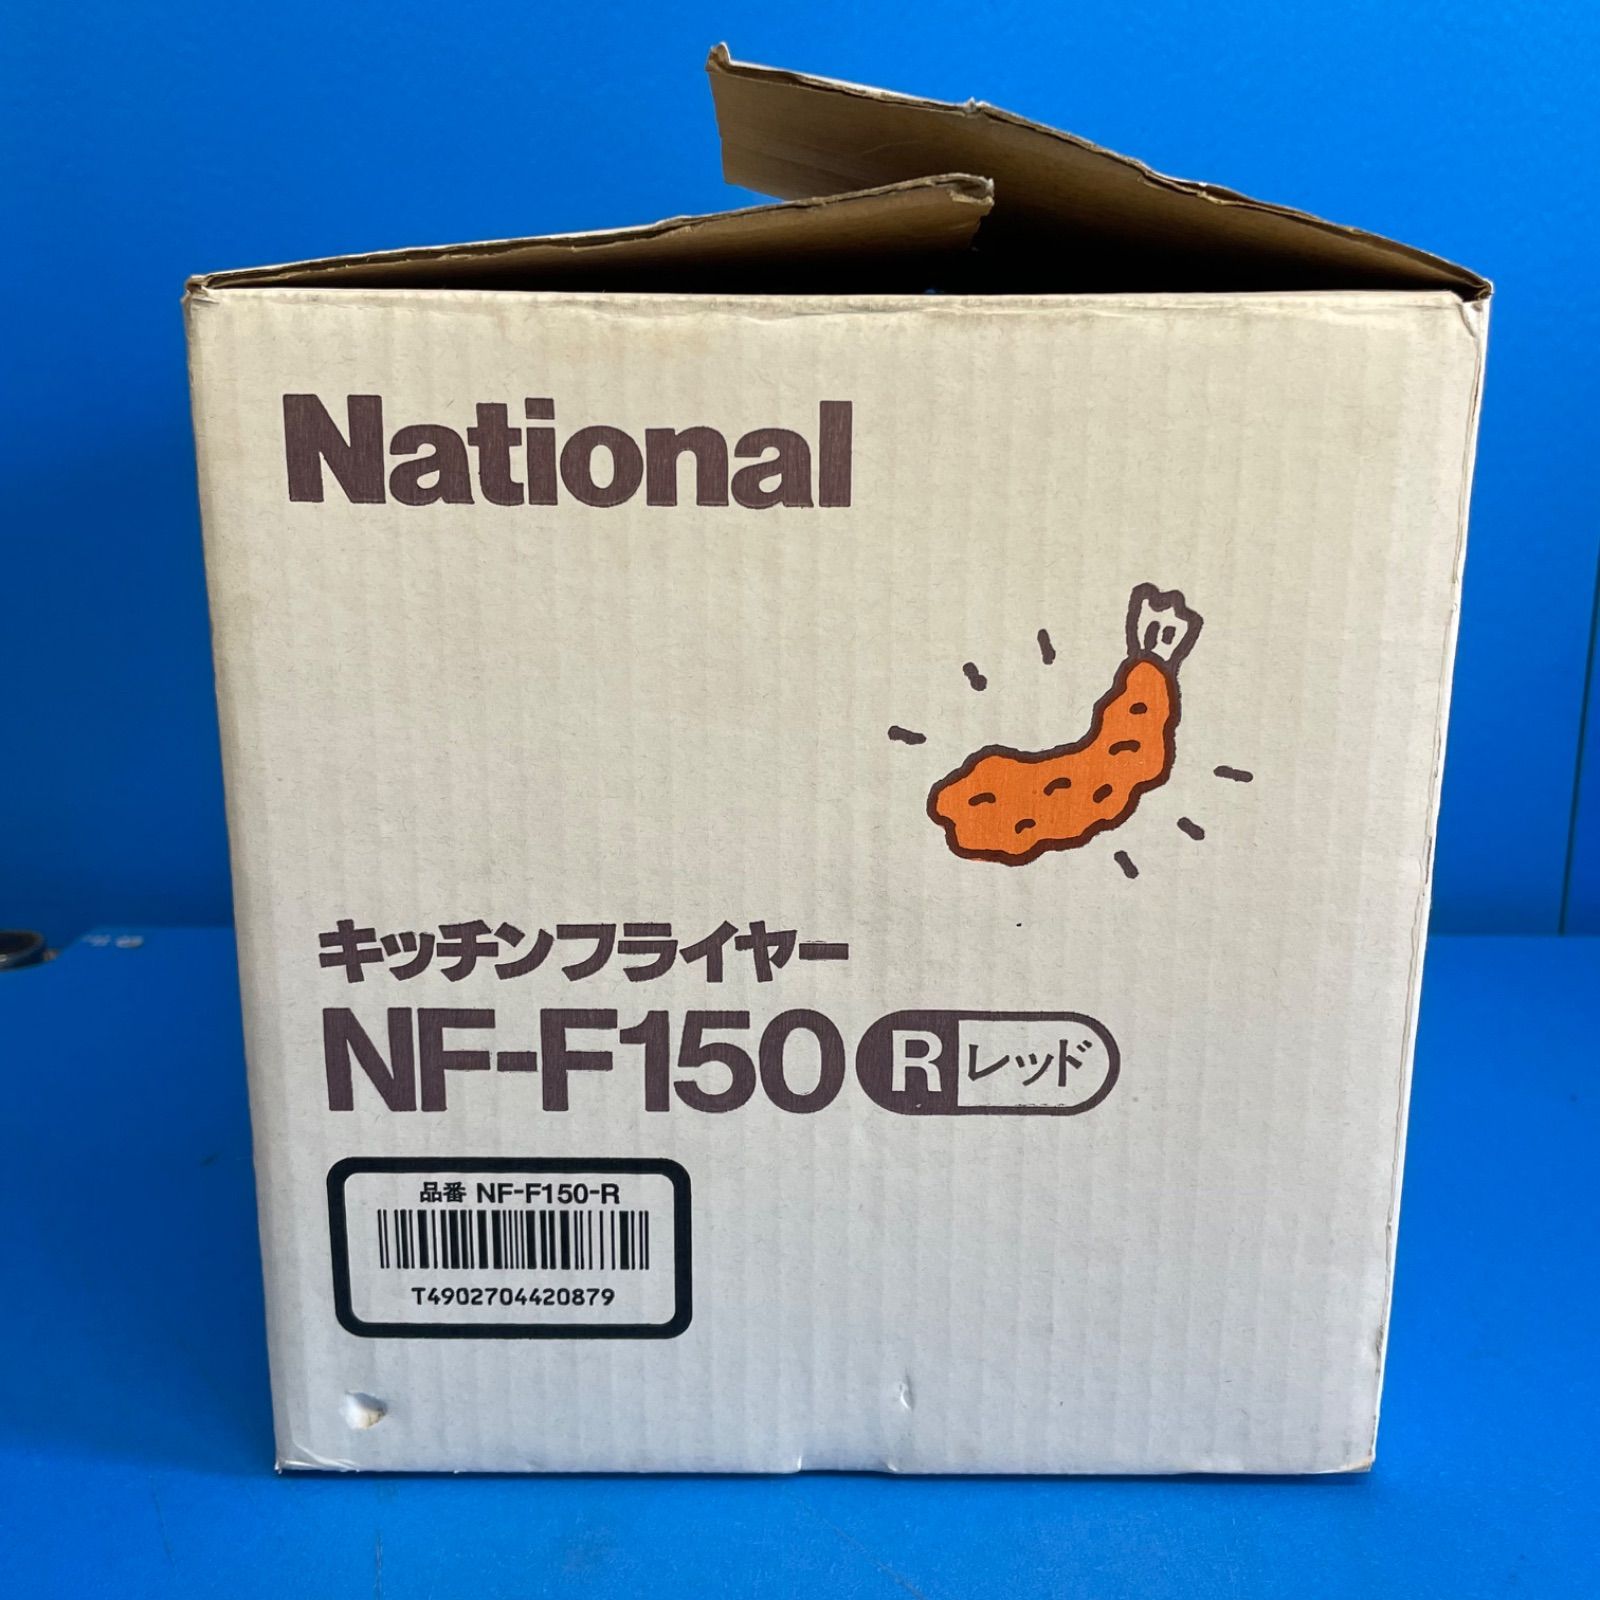 National キッチンフライヤーNF-F150-R